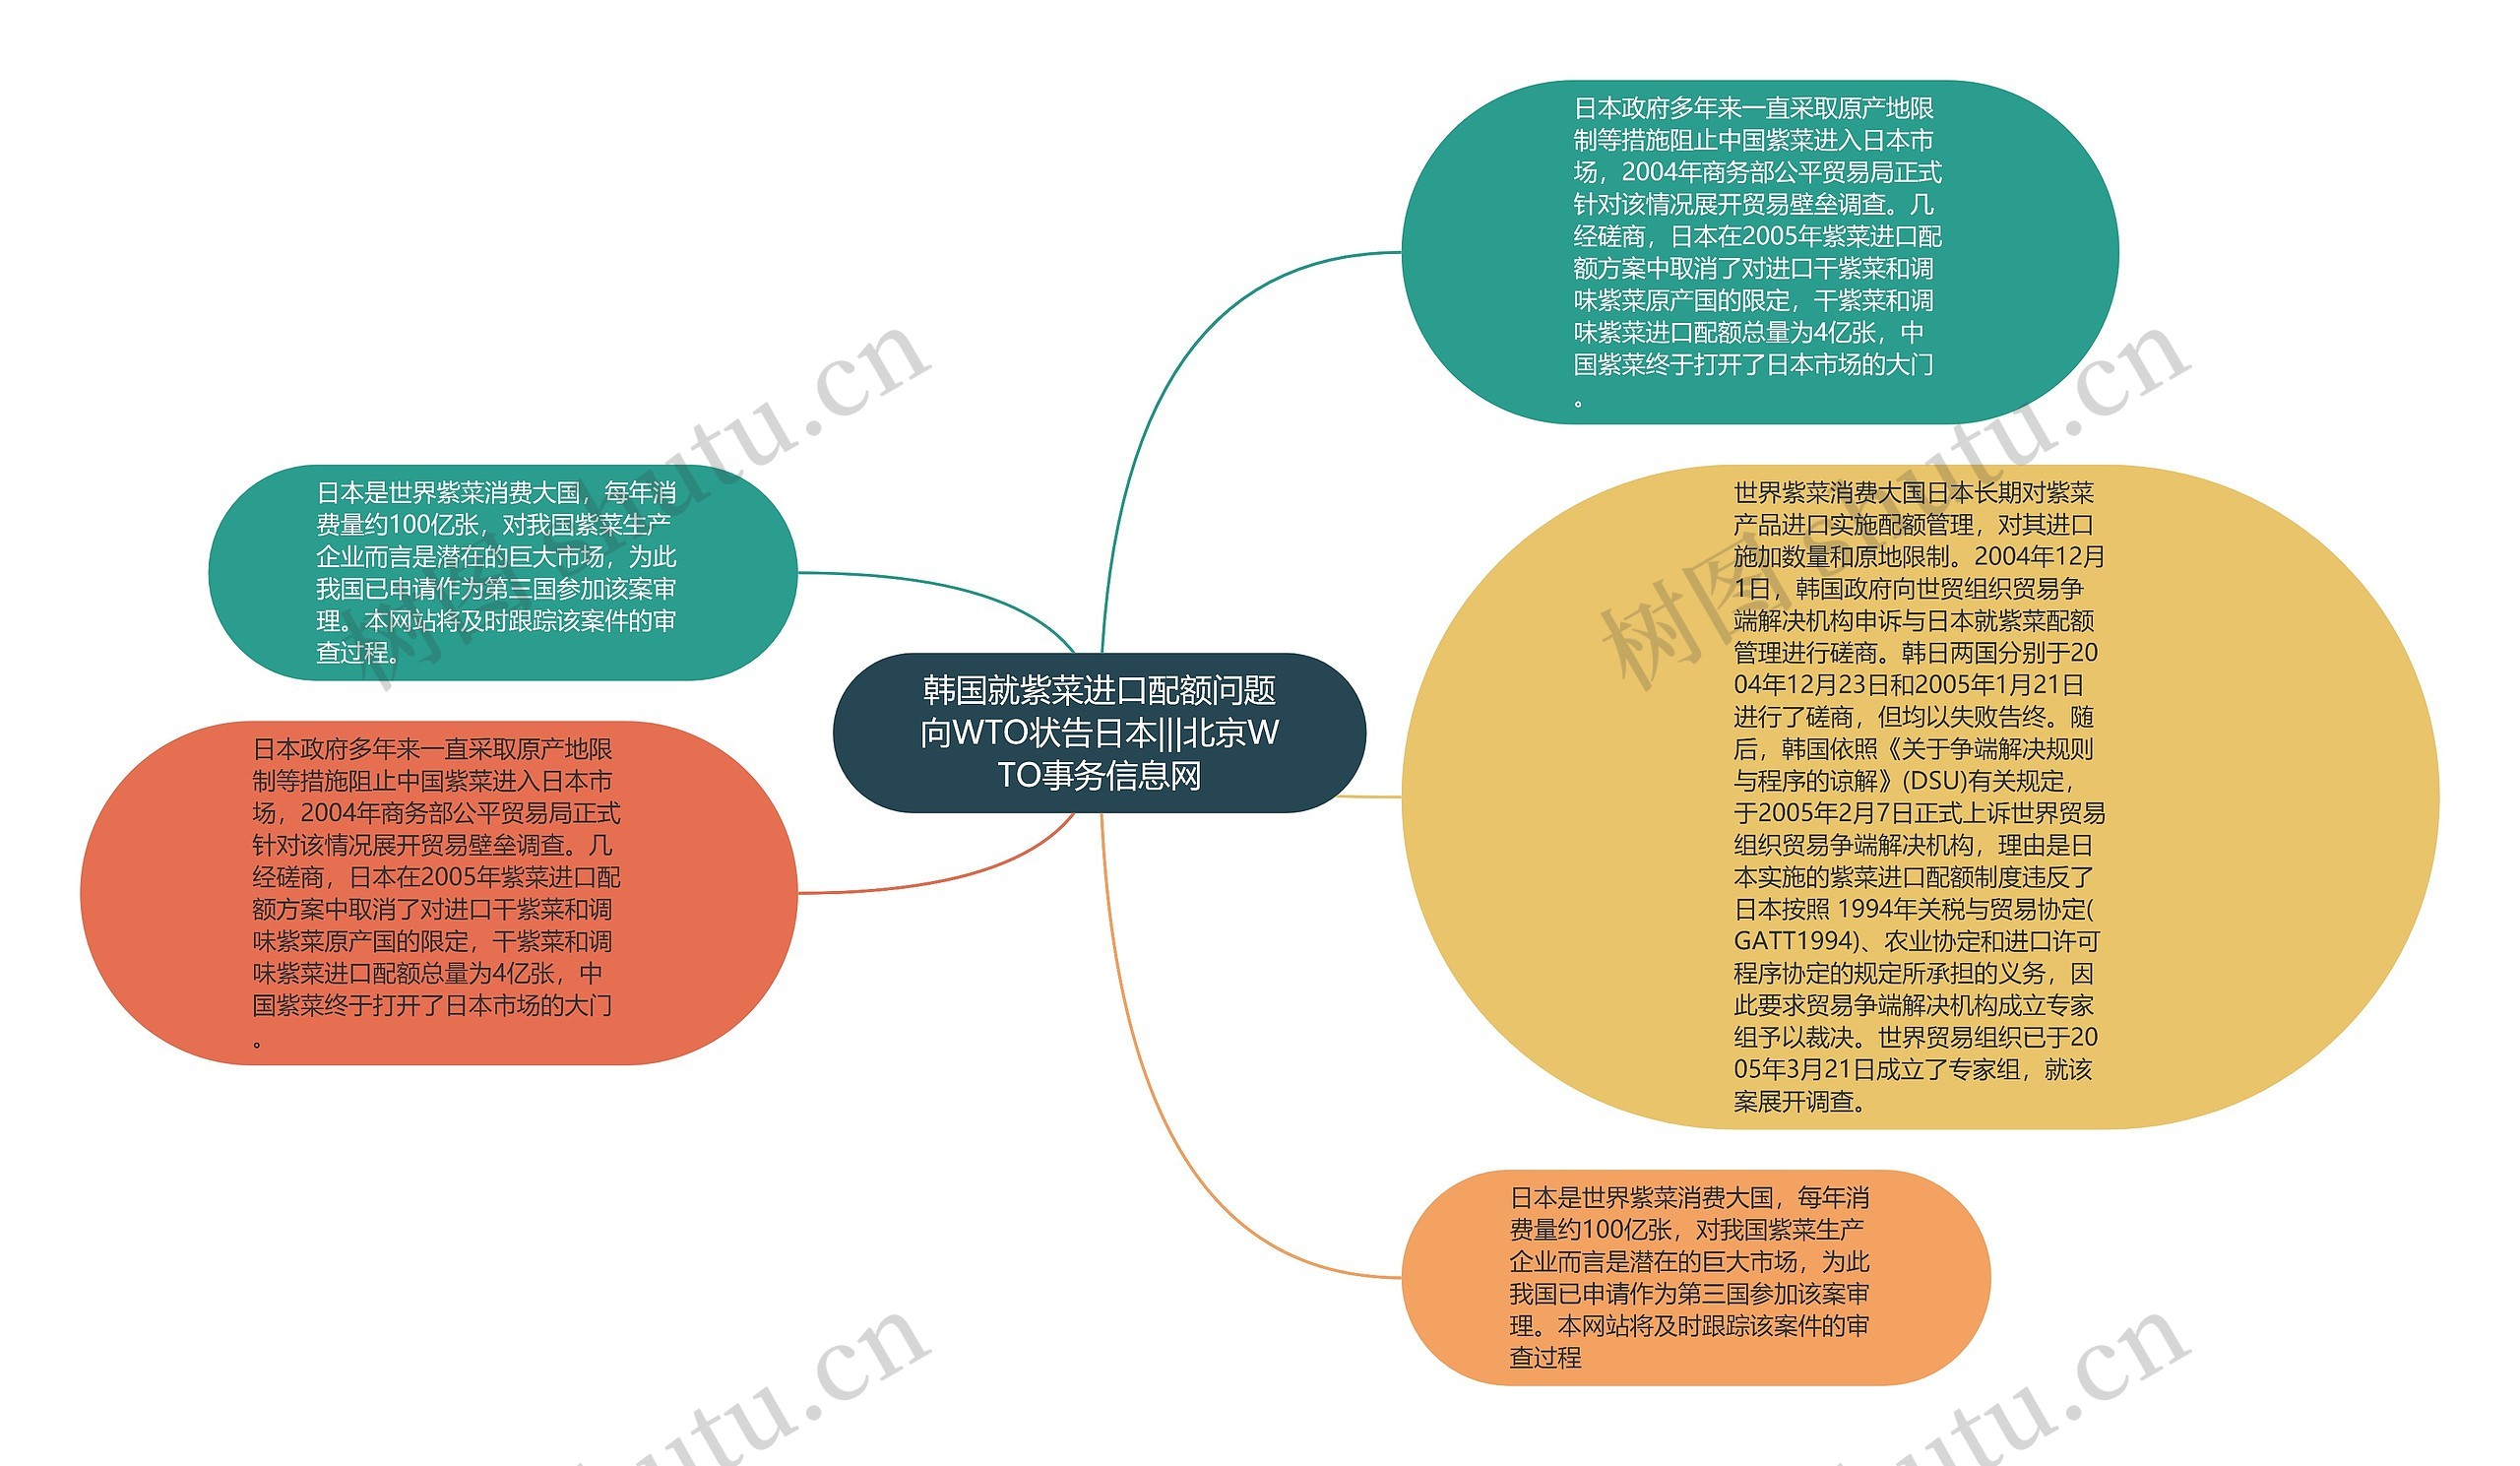 韩国就紫菜进口配额问题向WTO状告日本|||北京WTO事务信息网